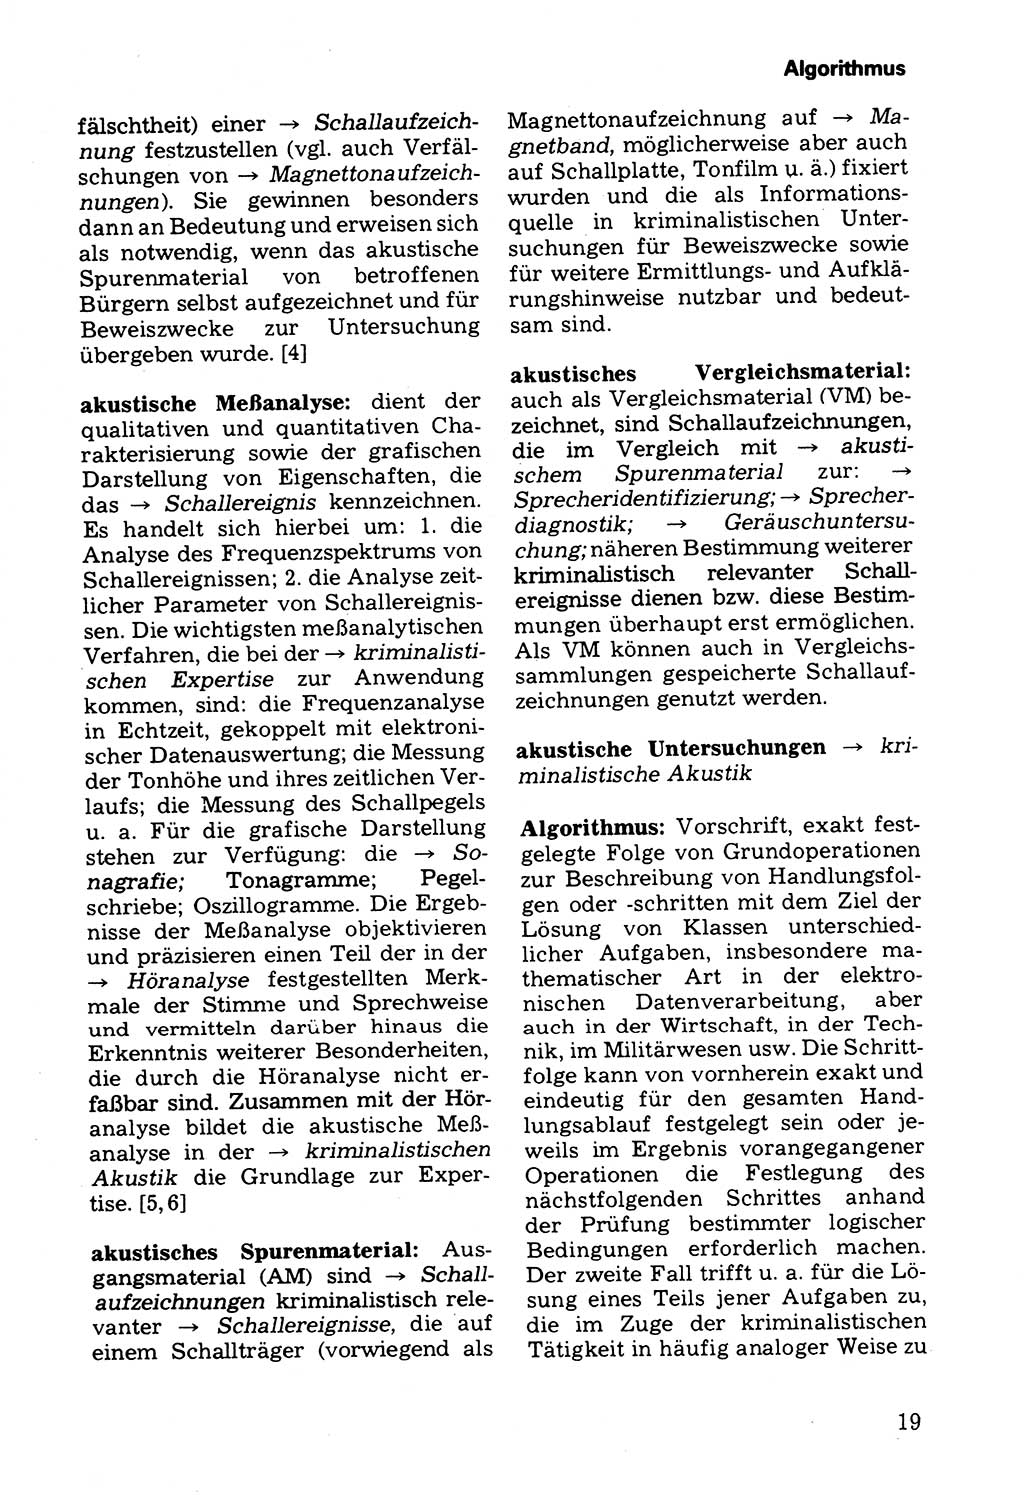 Wörterbuch der sozialistischen Kriminalistik [Deutsche Demokratische Republik (DDR)] 1981, Seite 19 (Wb. soz. Krim. DDR 1981, S. 19)